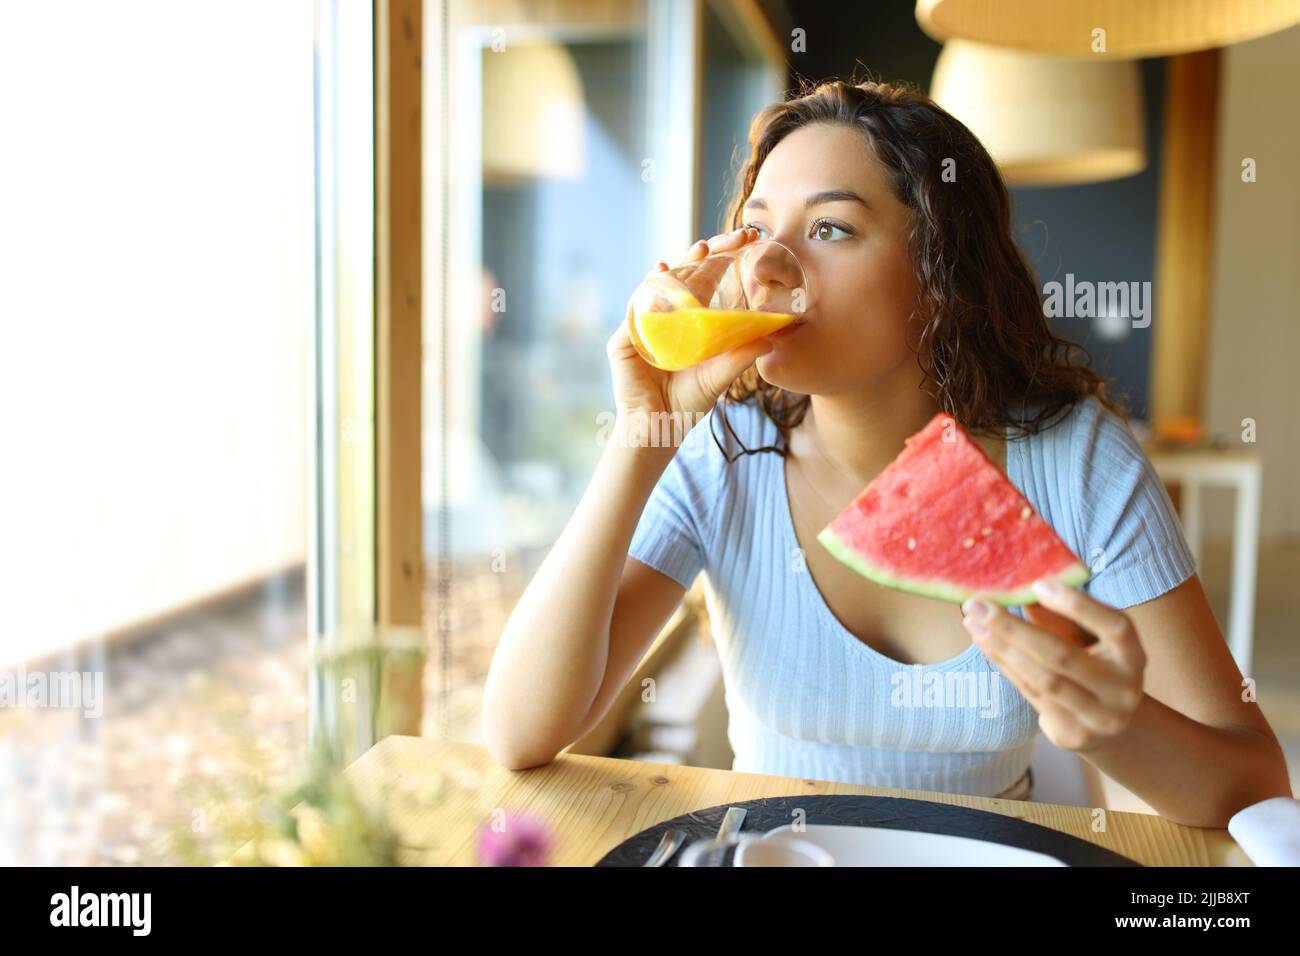 Femme buvant du jus d'orange et mangeant de la pastèque à l'intérieur d'un restaurant Banque D'Images